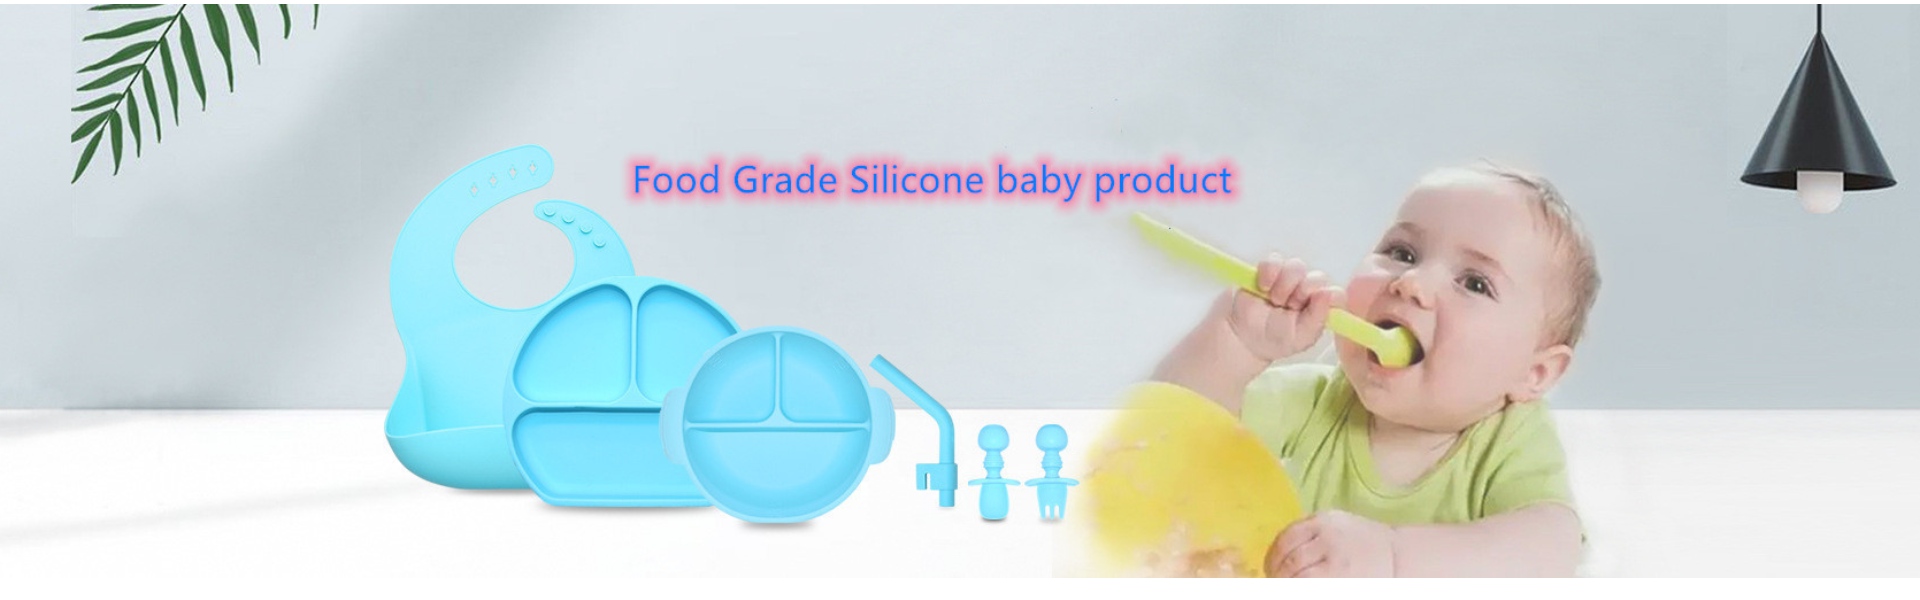 ซิลิโคนเครื่องครัวซิลิโคนน้ำแข็งแม่พิมพ์ซิลิโคนผลิตภัณฑ์เด็ก,Huizhou Calipolo accessory Ltd